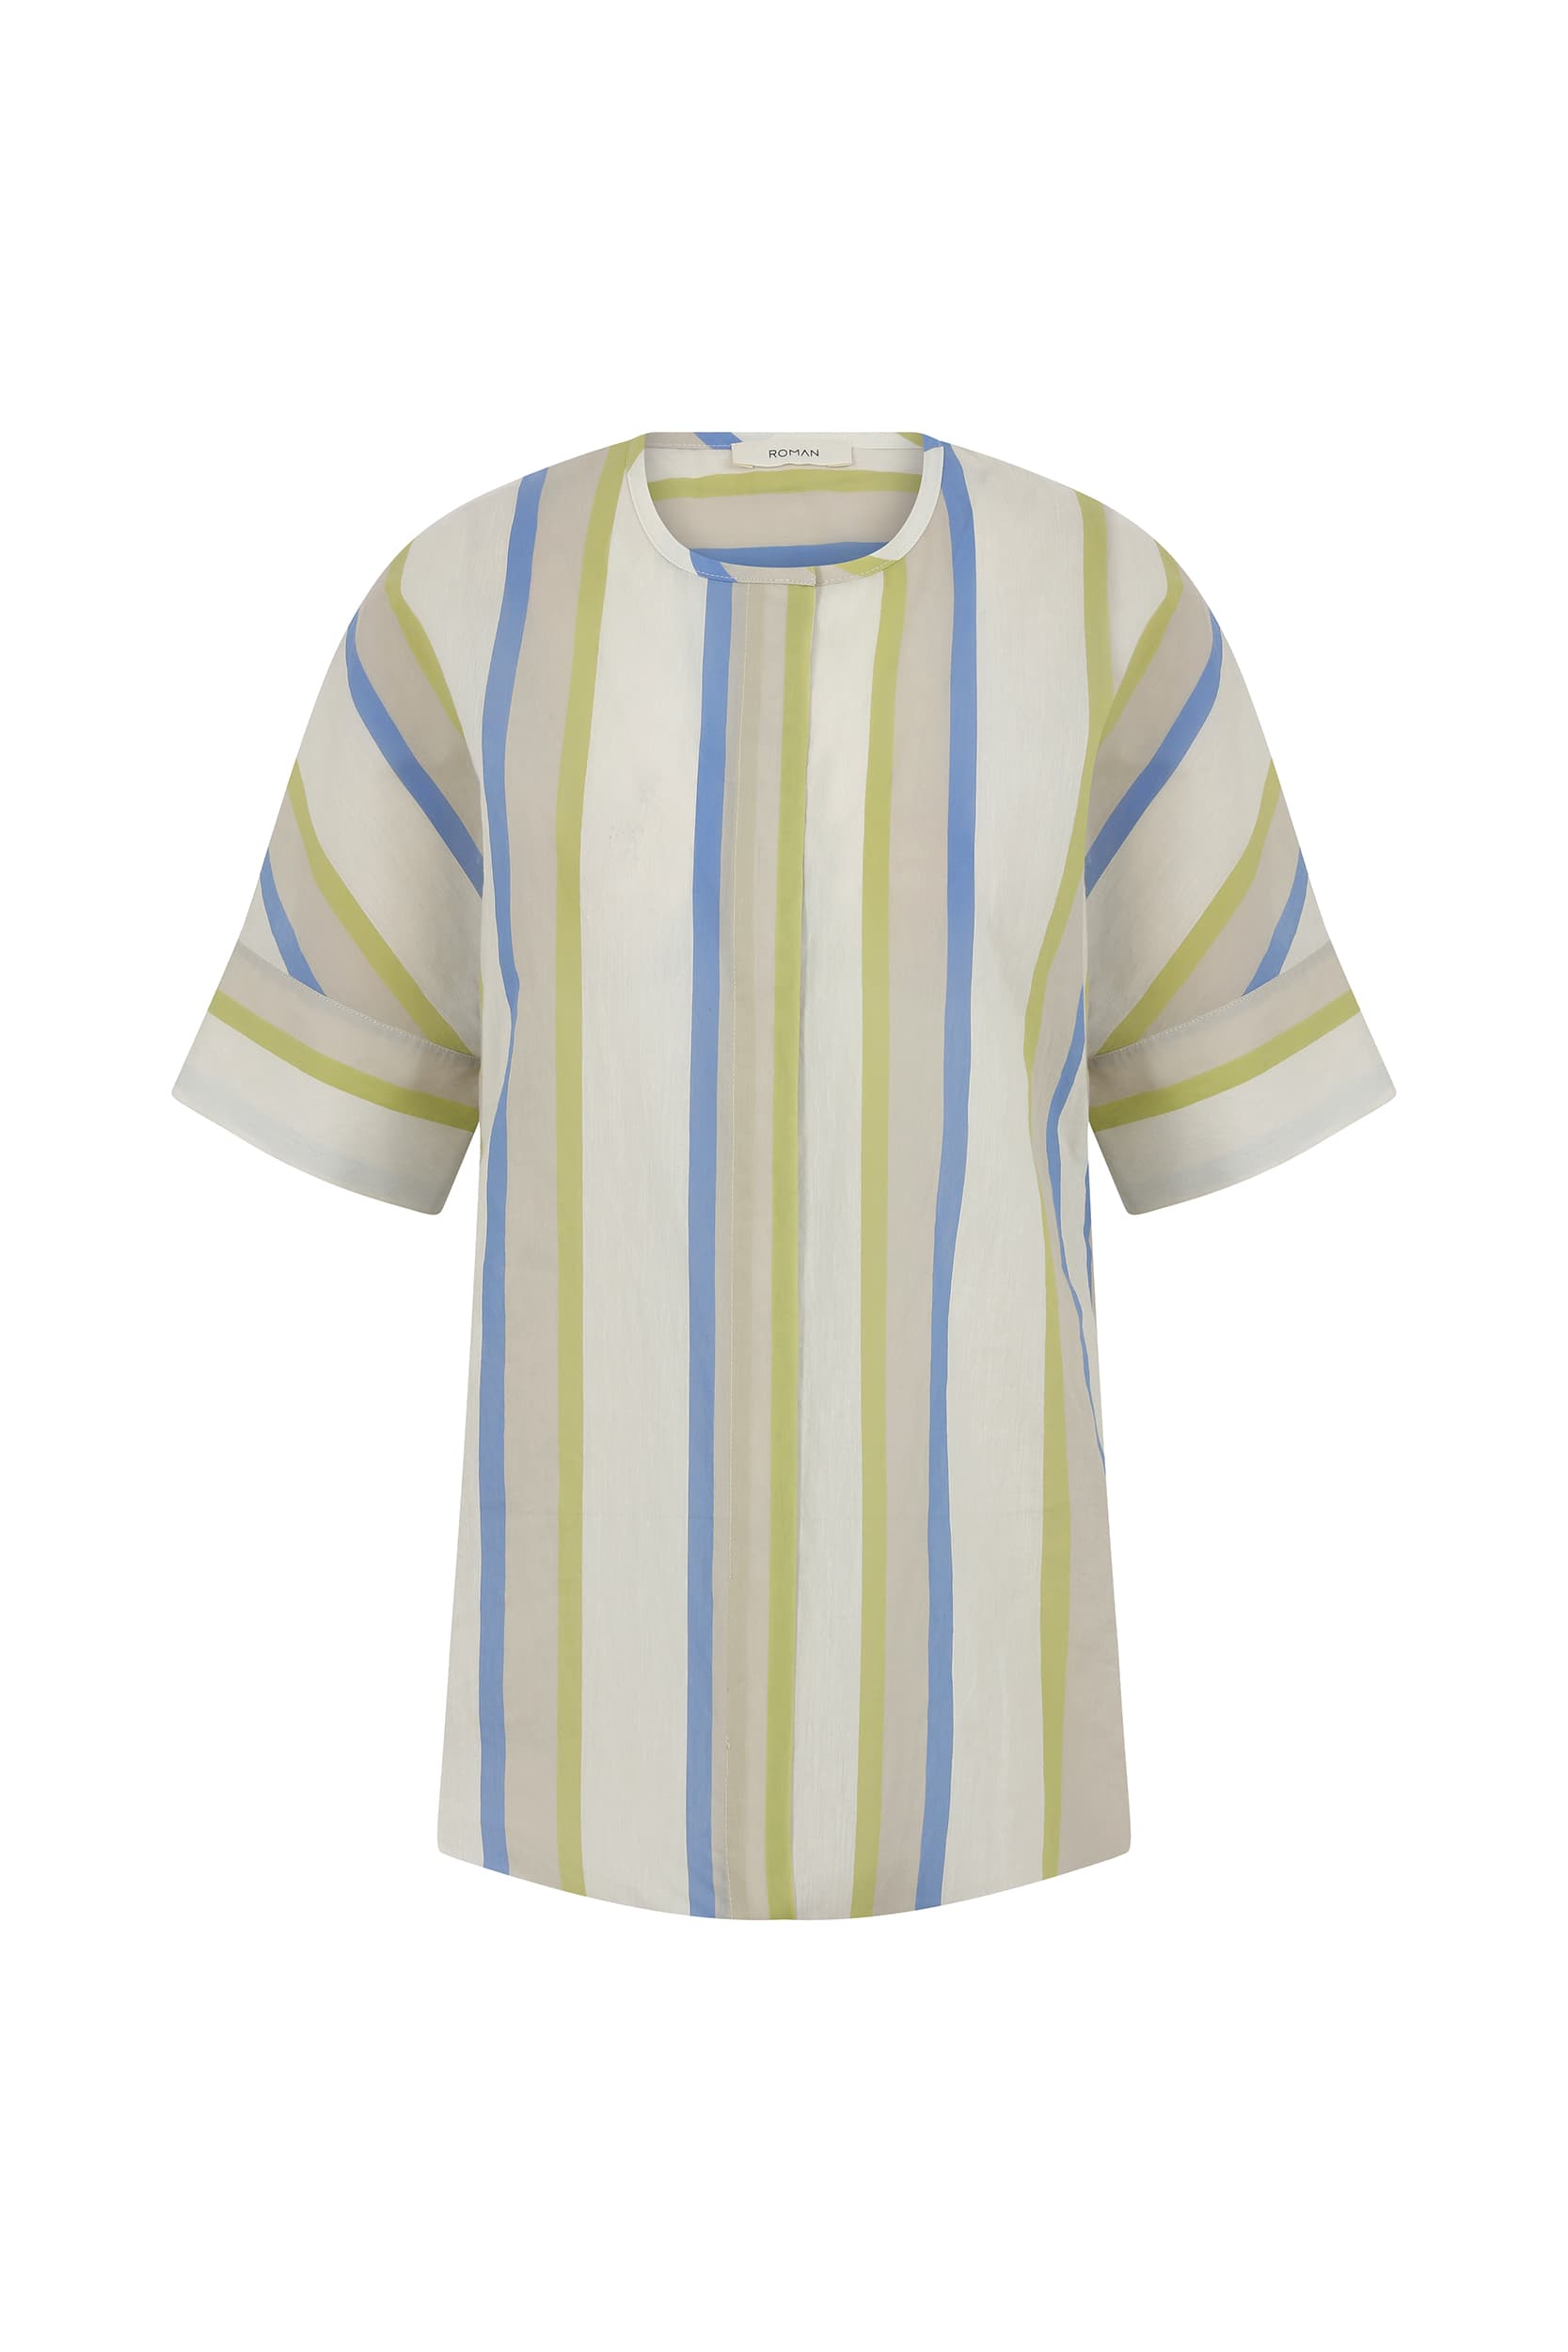 Vintage Blue White Yellow Lining Collarless Shirt-- [ORIGINAL]